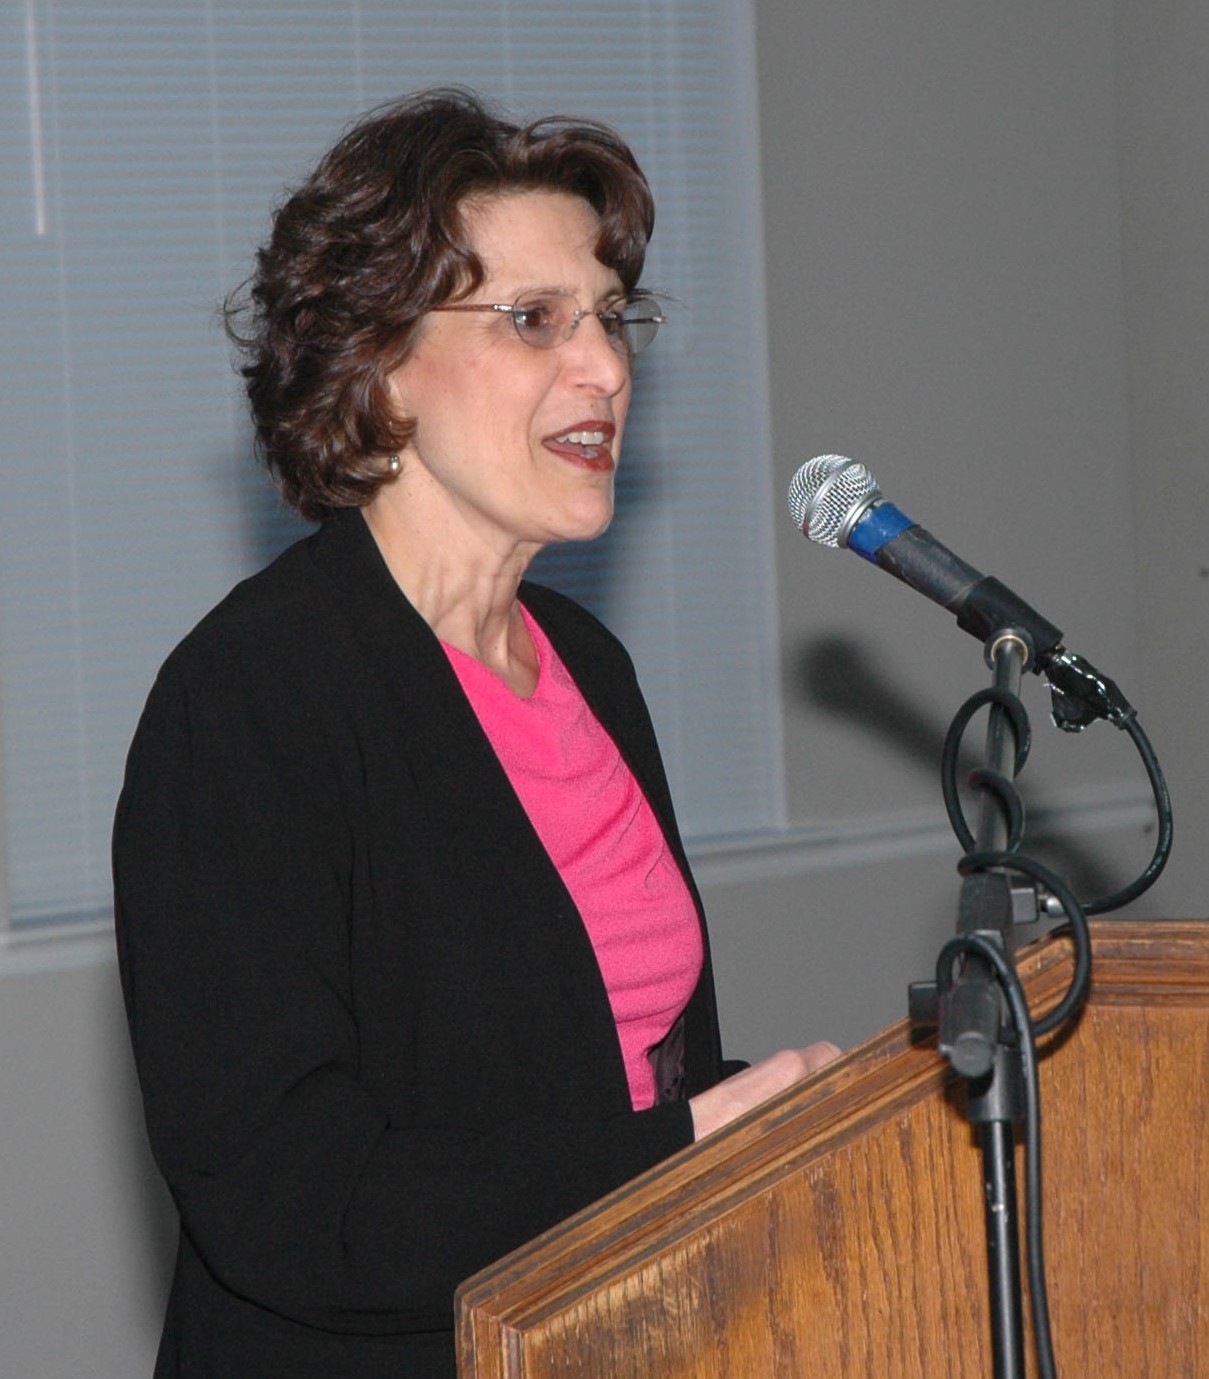 Speaker Ann Macheras